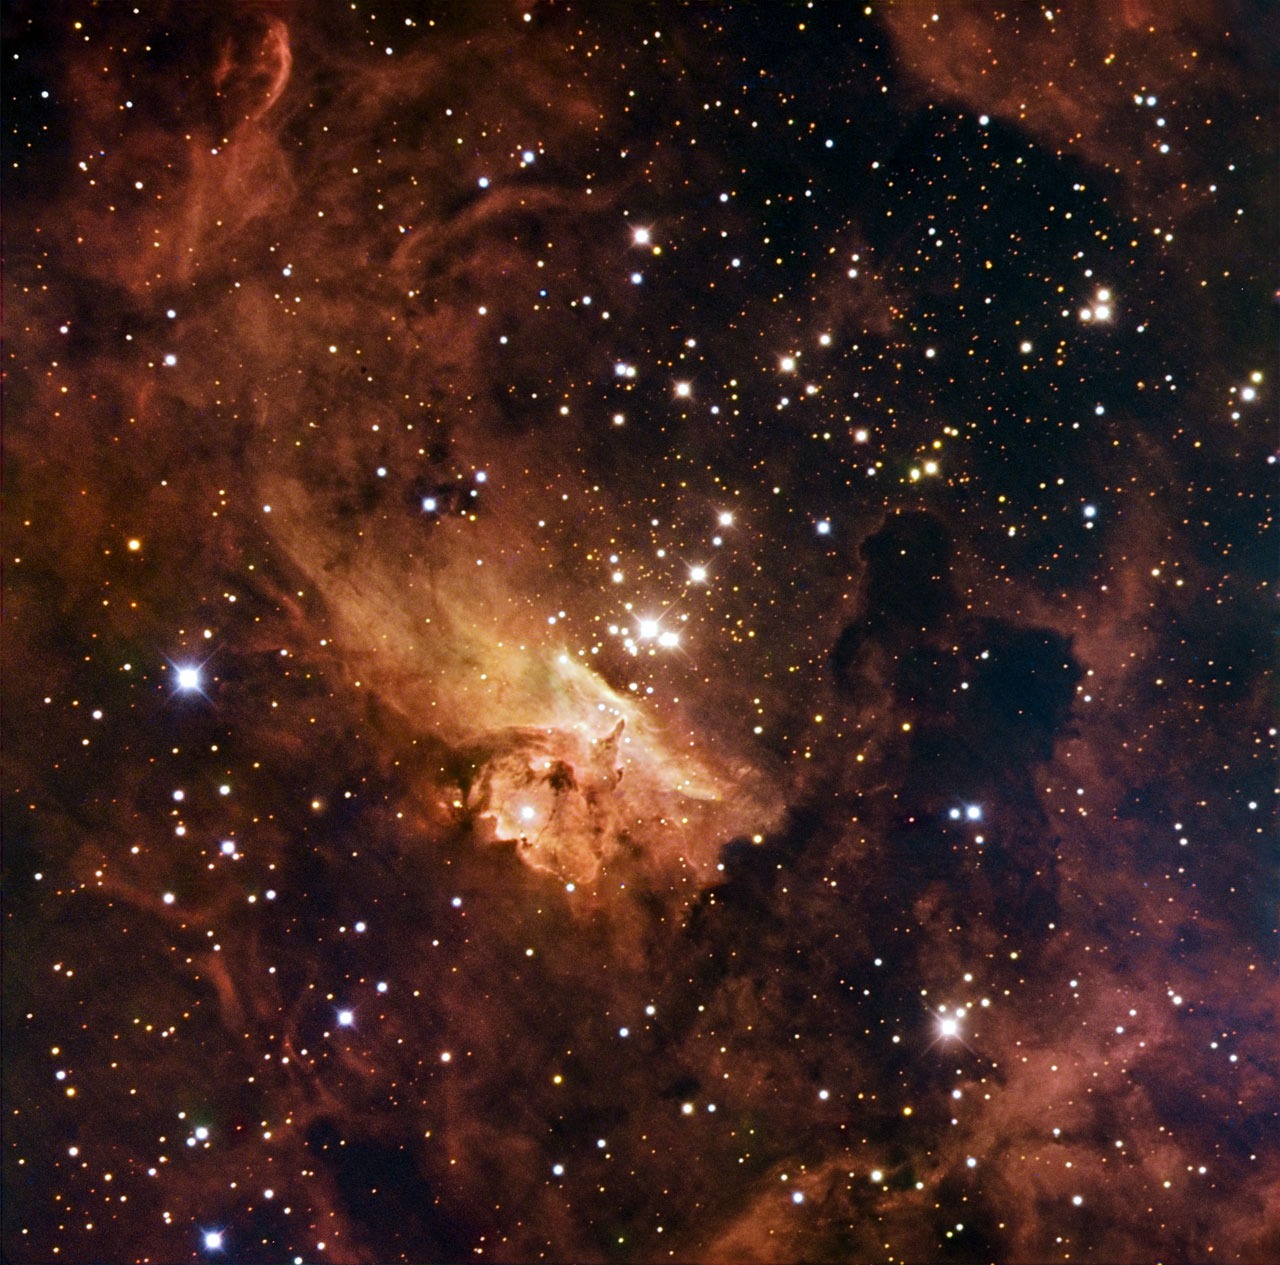 Sonido en las estrellas de Pismis 24: NASA